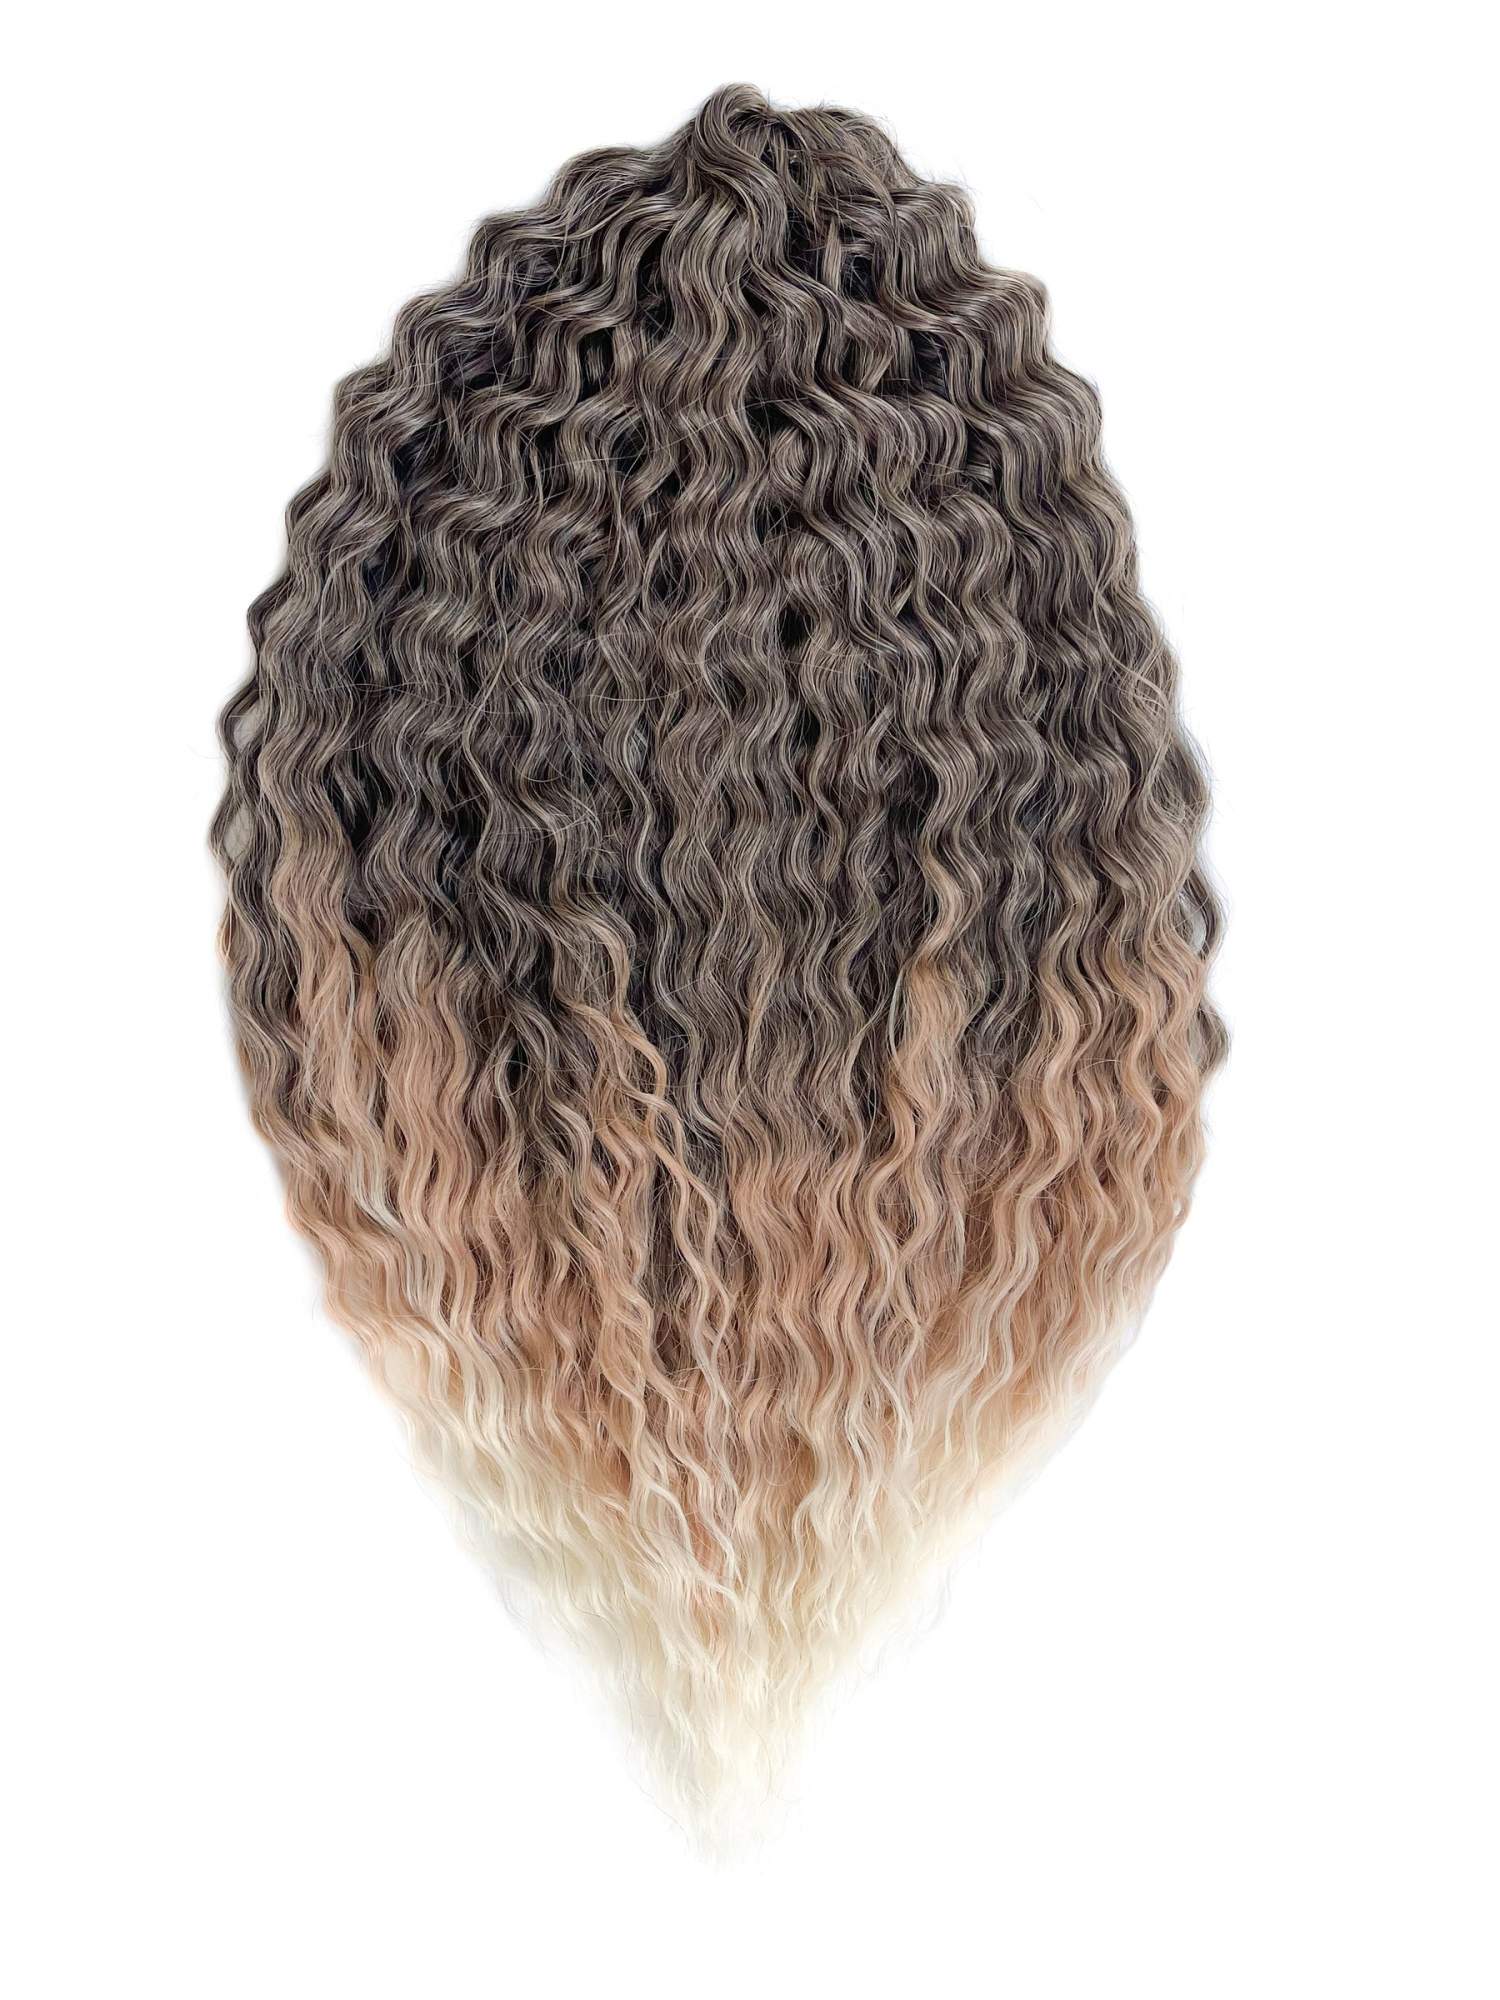 Афрокудри для плетения волос Ariel цвет T1b27 613 каштановый длина 60см вес 300г arduino от азов программирования до создания практических устройств м белов